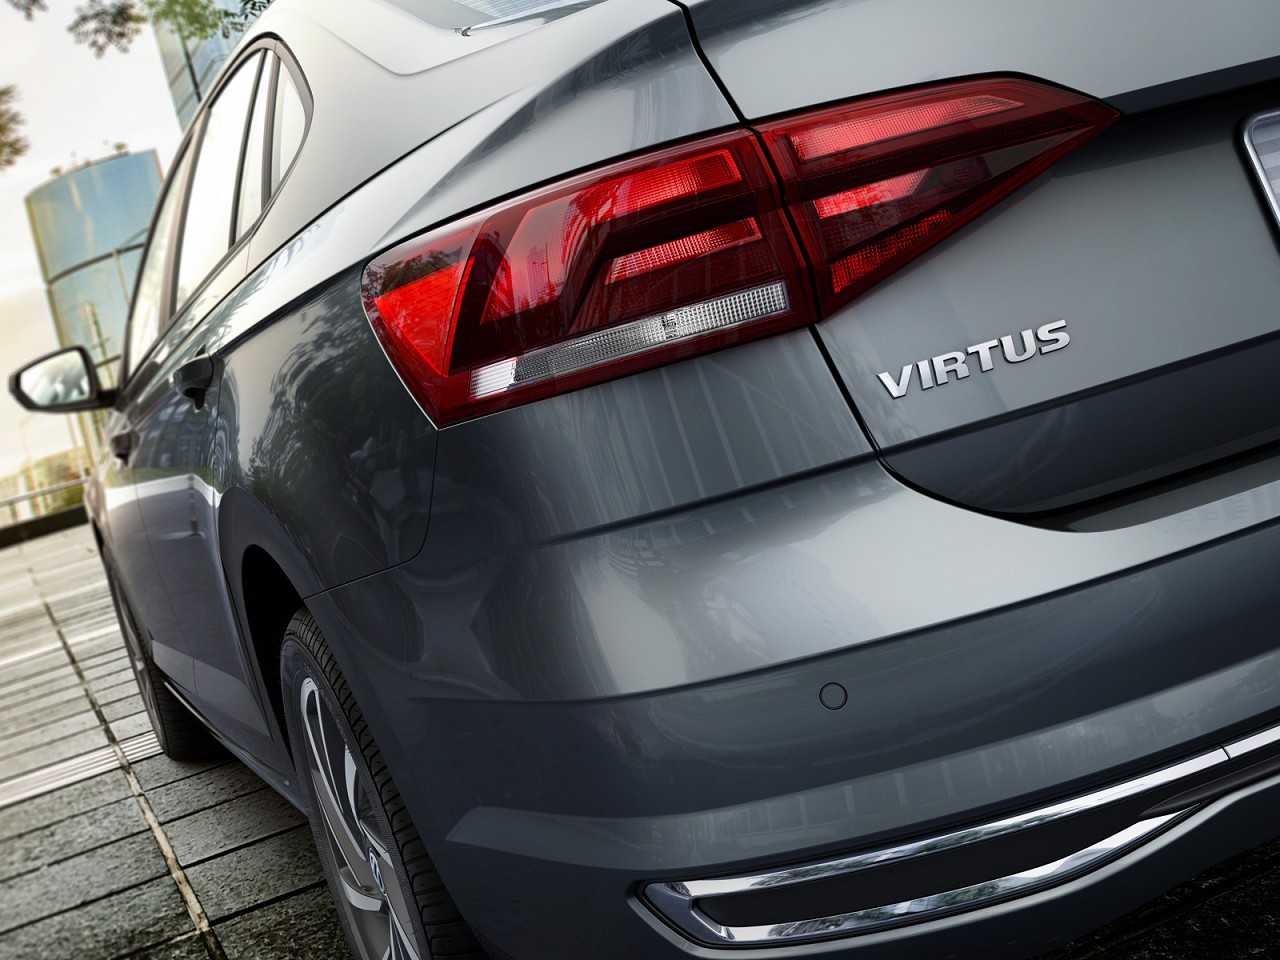 Por qual novidade esperar: VW Virtus ou o facelift do C4 Lounge?